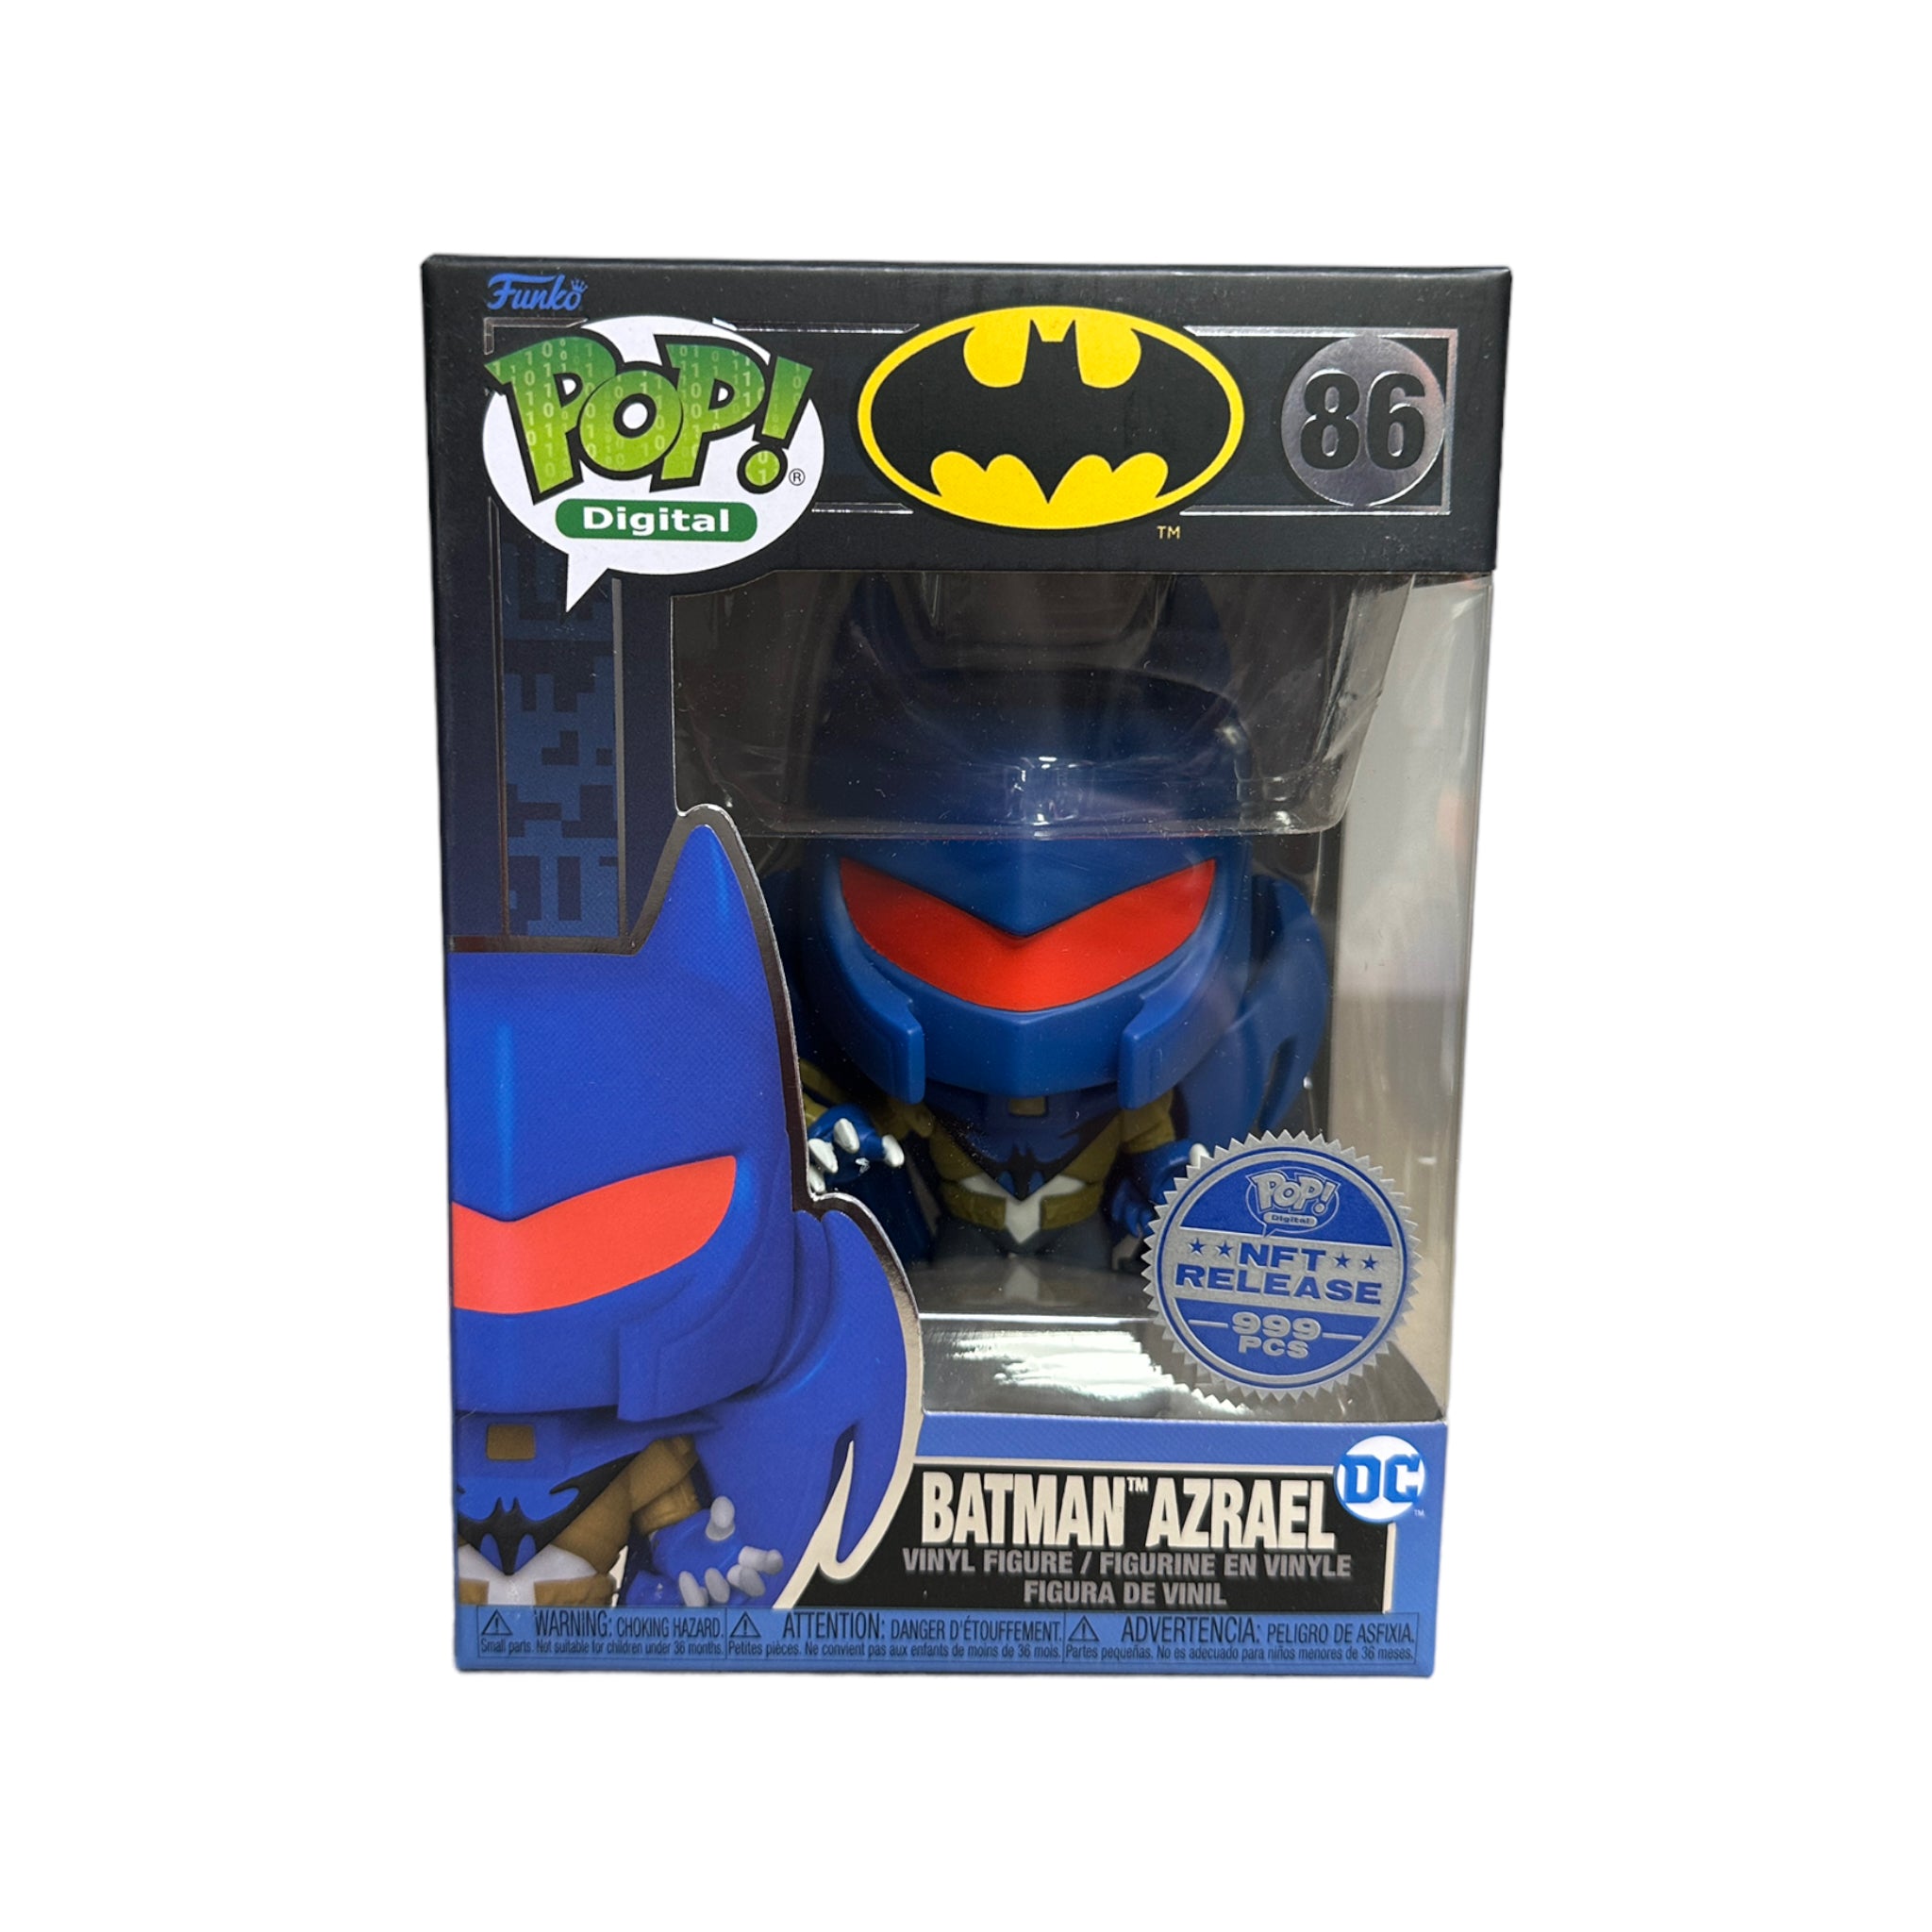 Batman Azrael #86 Funko Pop! - Batman - NFT Release Exclusive LE999 Pcs - Condition 9.5/10